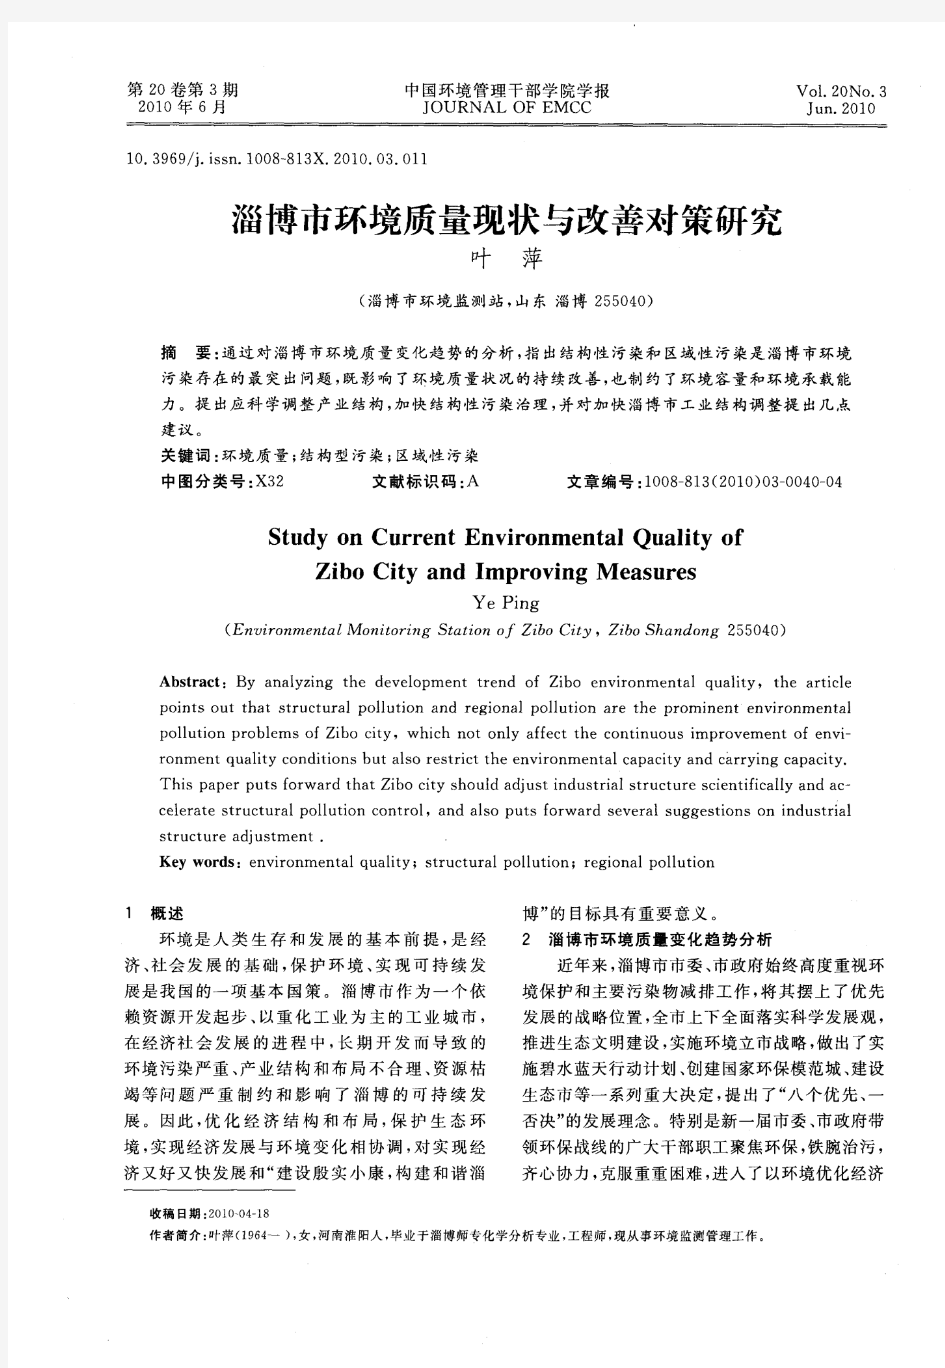 淄博市环境质量现状与改善对策研究